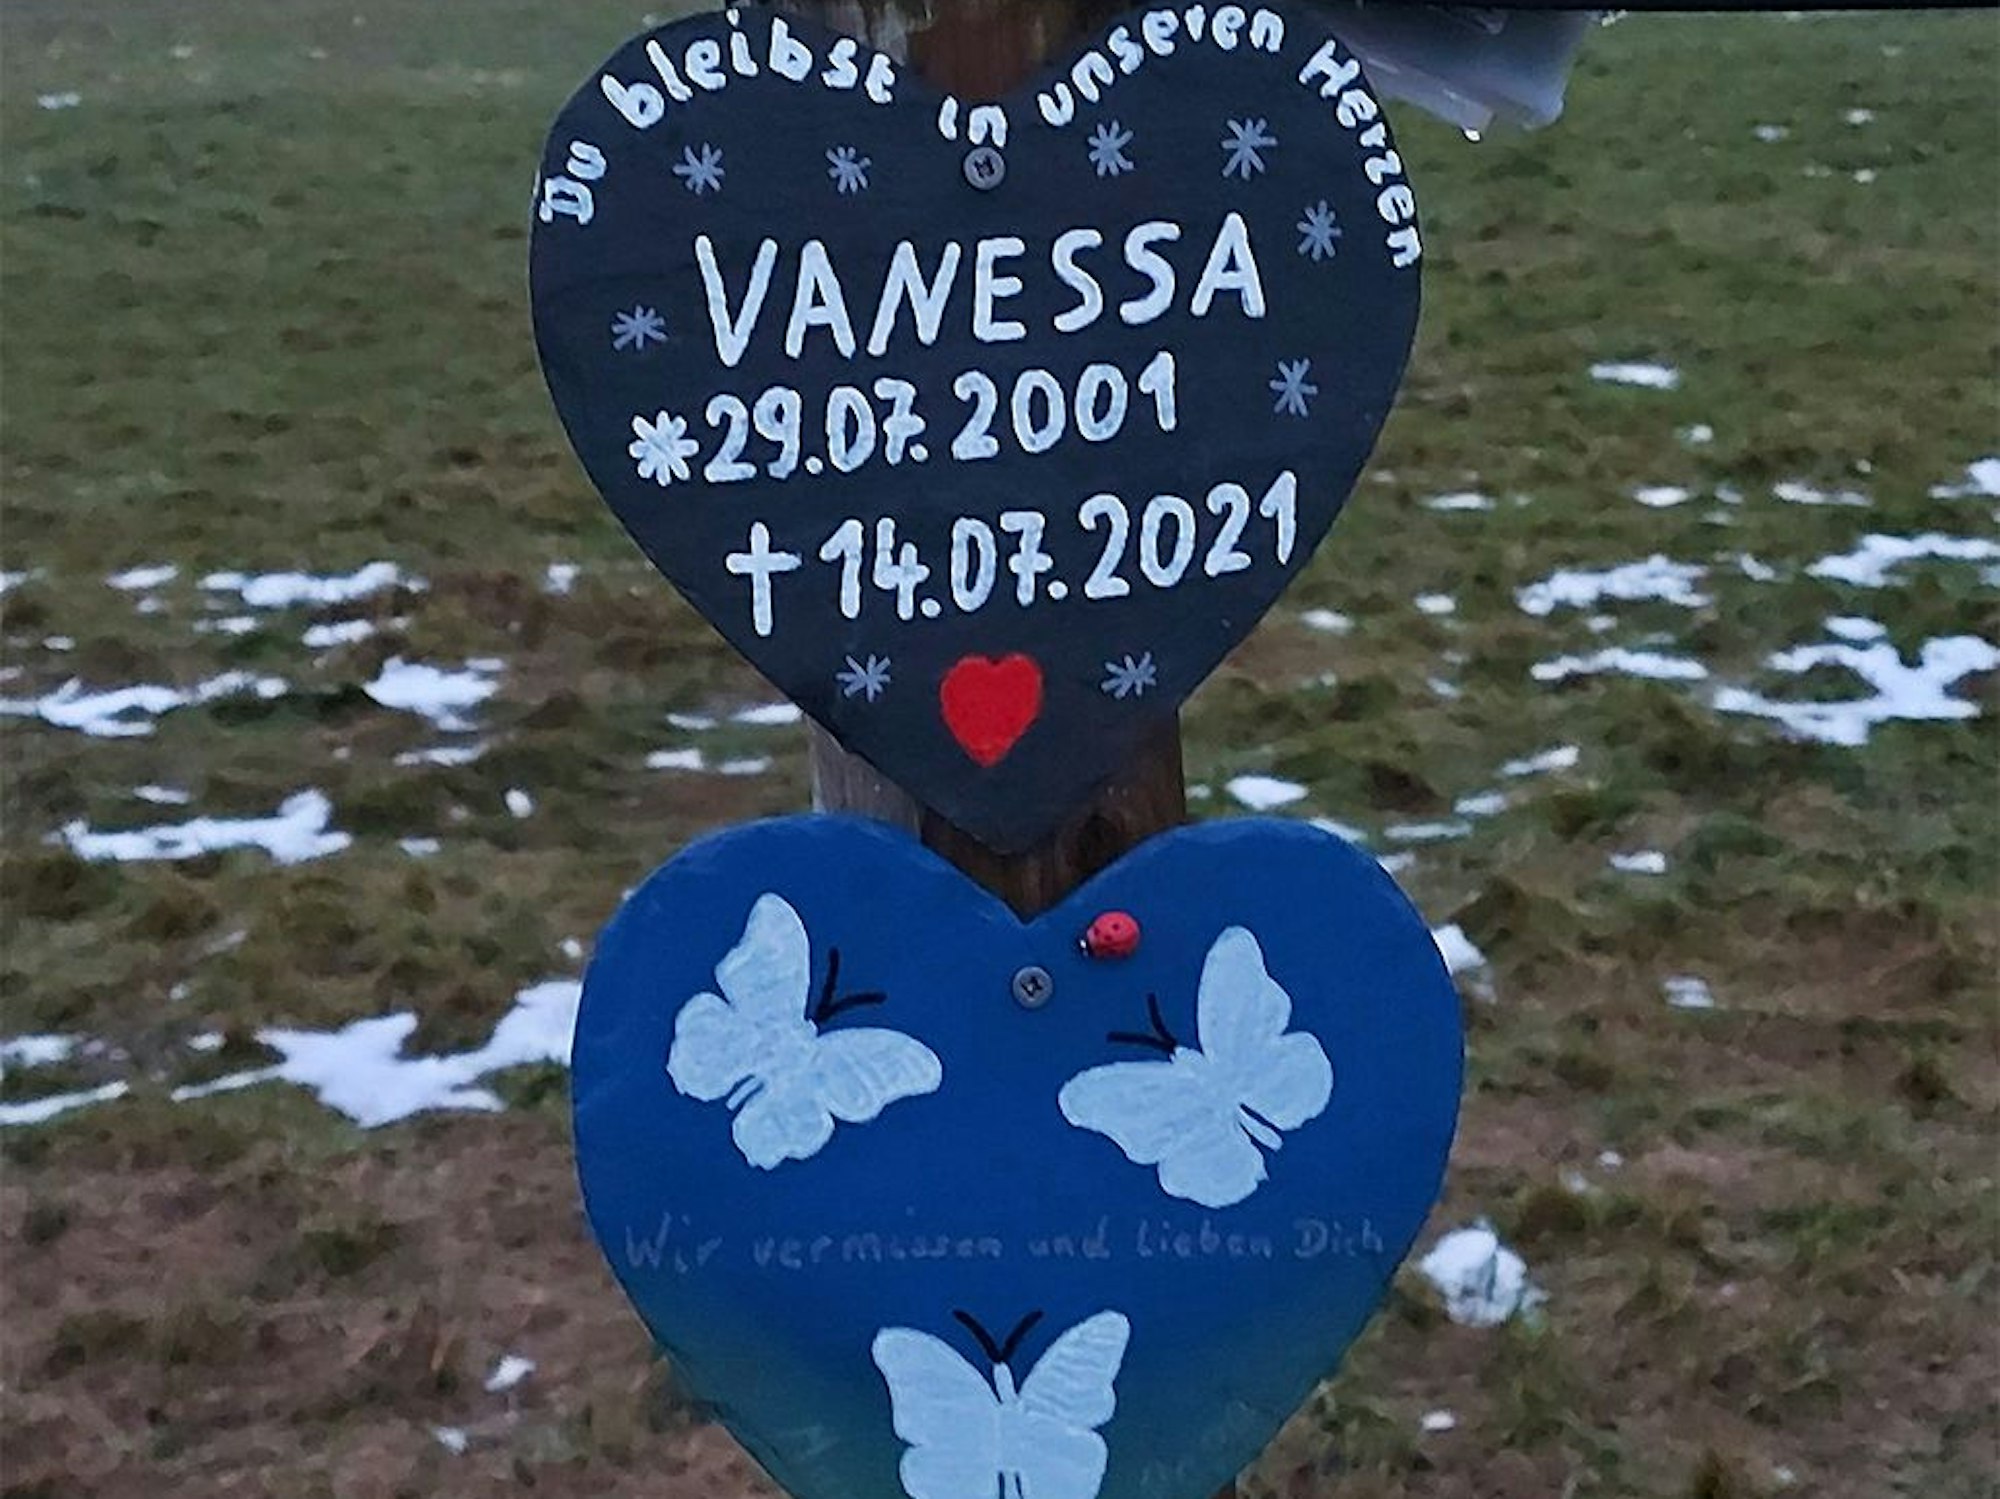 Ein schwarzes Herz mit weißer Schrift und ein blaues Herz mit weißen Schmetterlingen erinnern an einem Baum an eine junge Frau, die bei der Flutkatastrophe ihr Leben verloren hat.